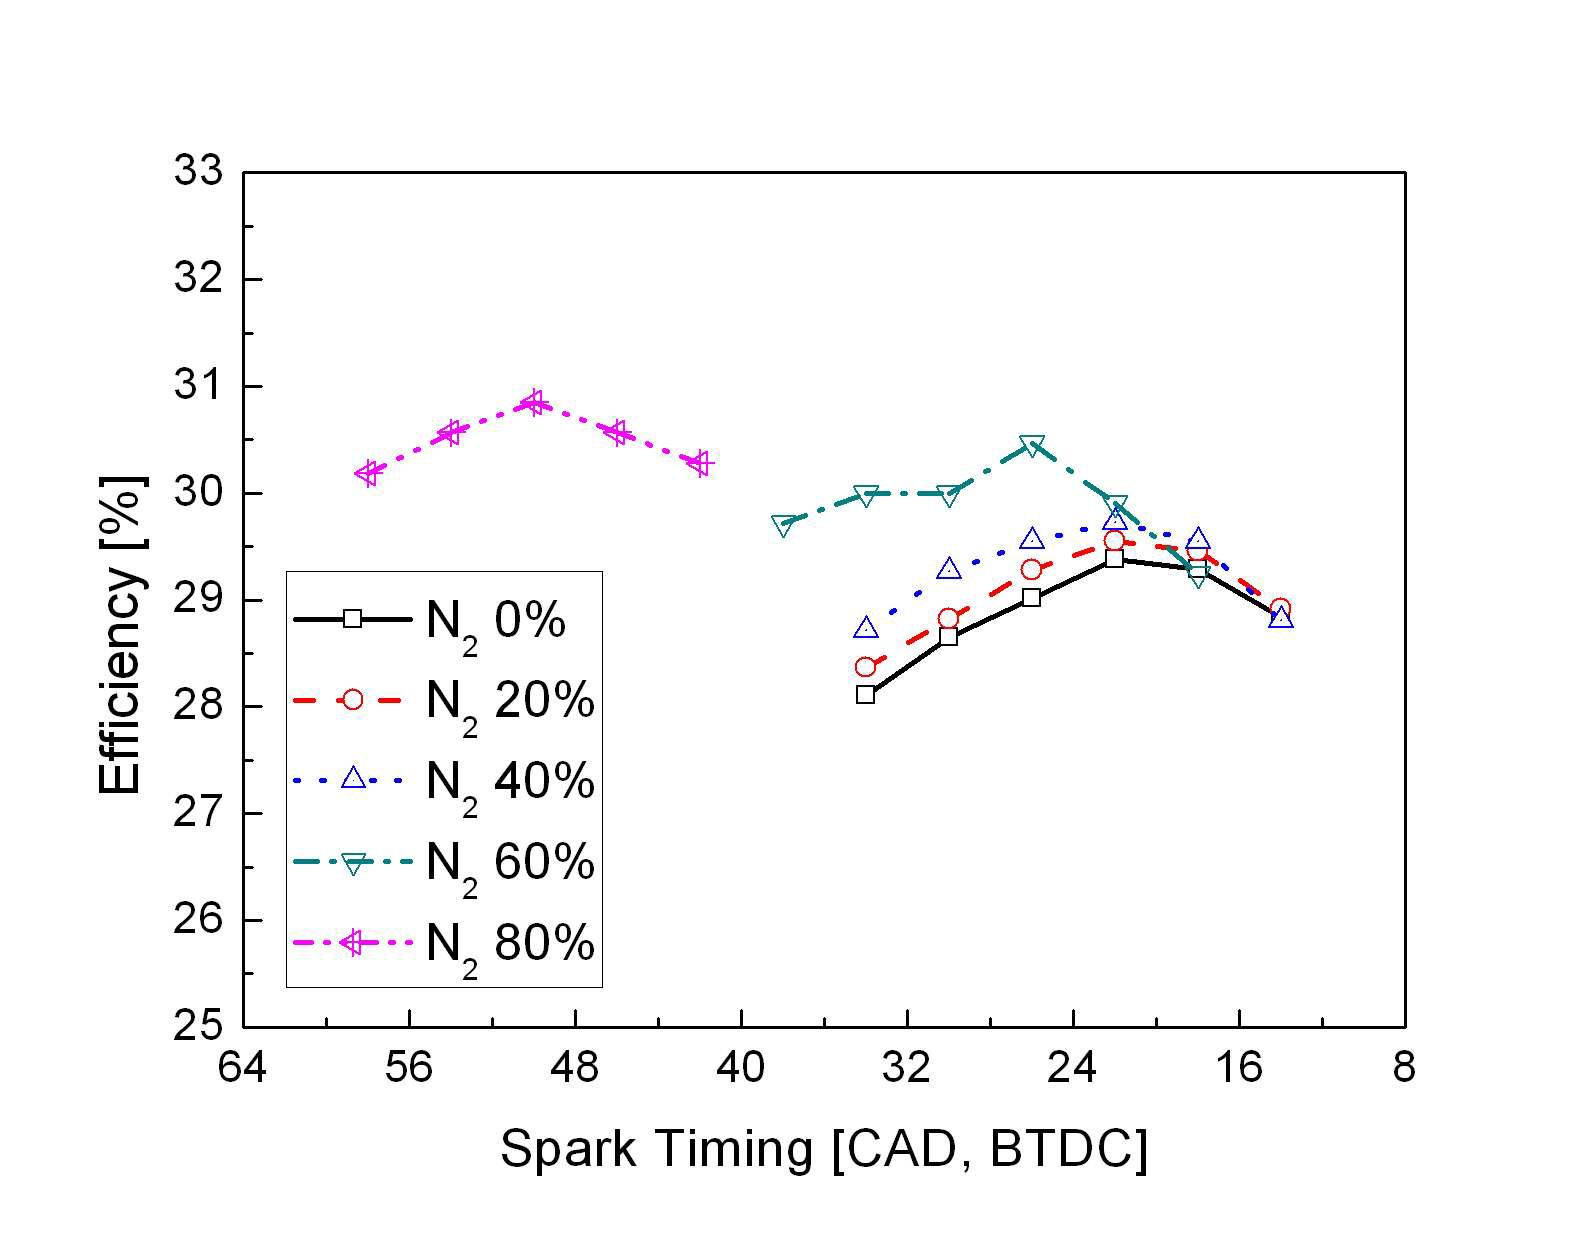 질소 희석비(발열량) 변화에 따른 효율 변화 (spark timing sweep)